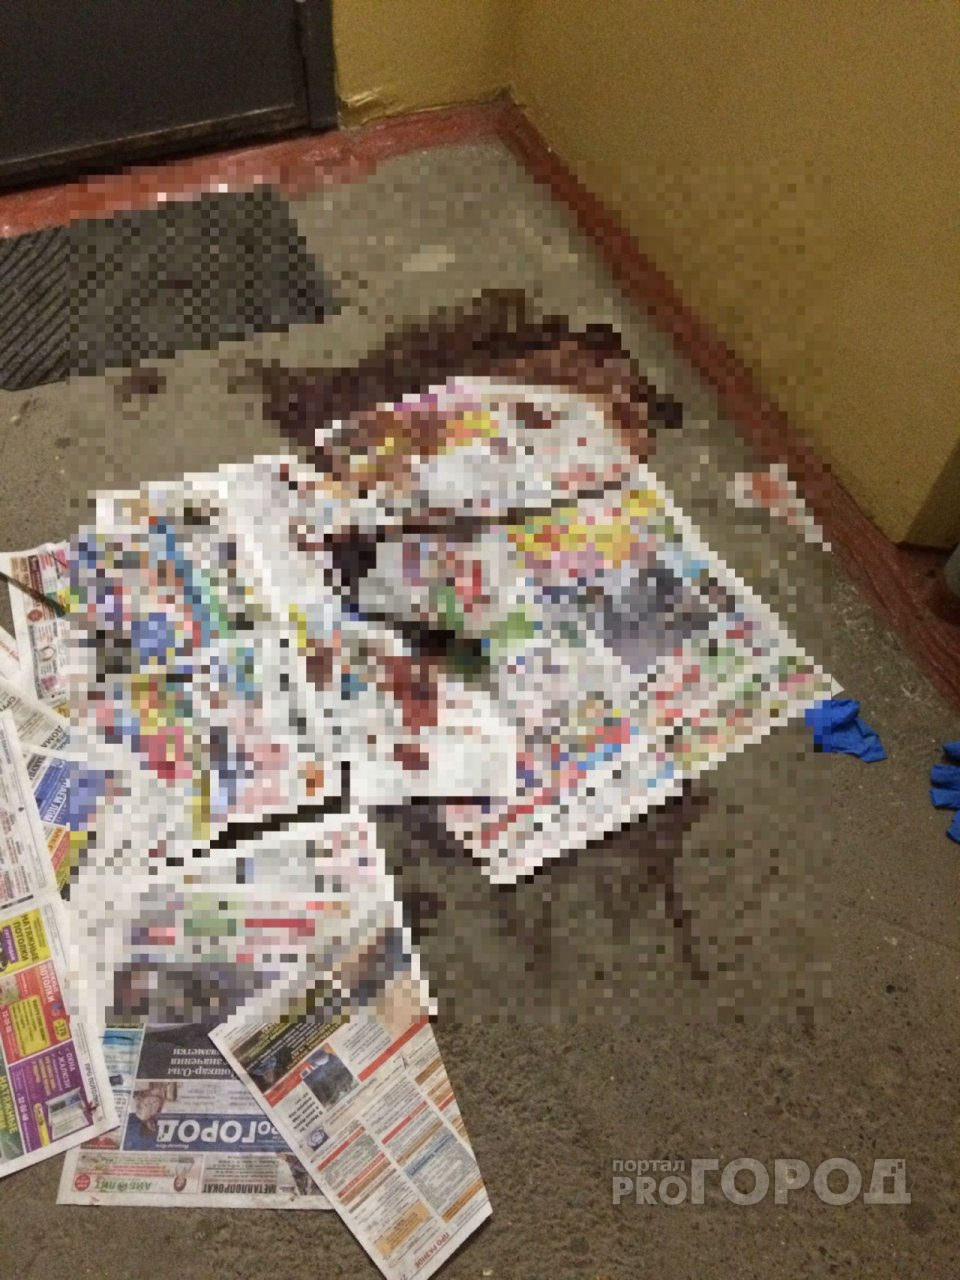 В йошкар-олинском подъезде лужи крови пытались прикрыть газетками